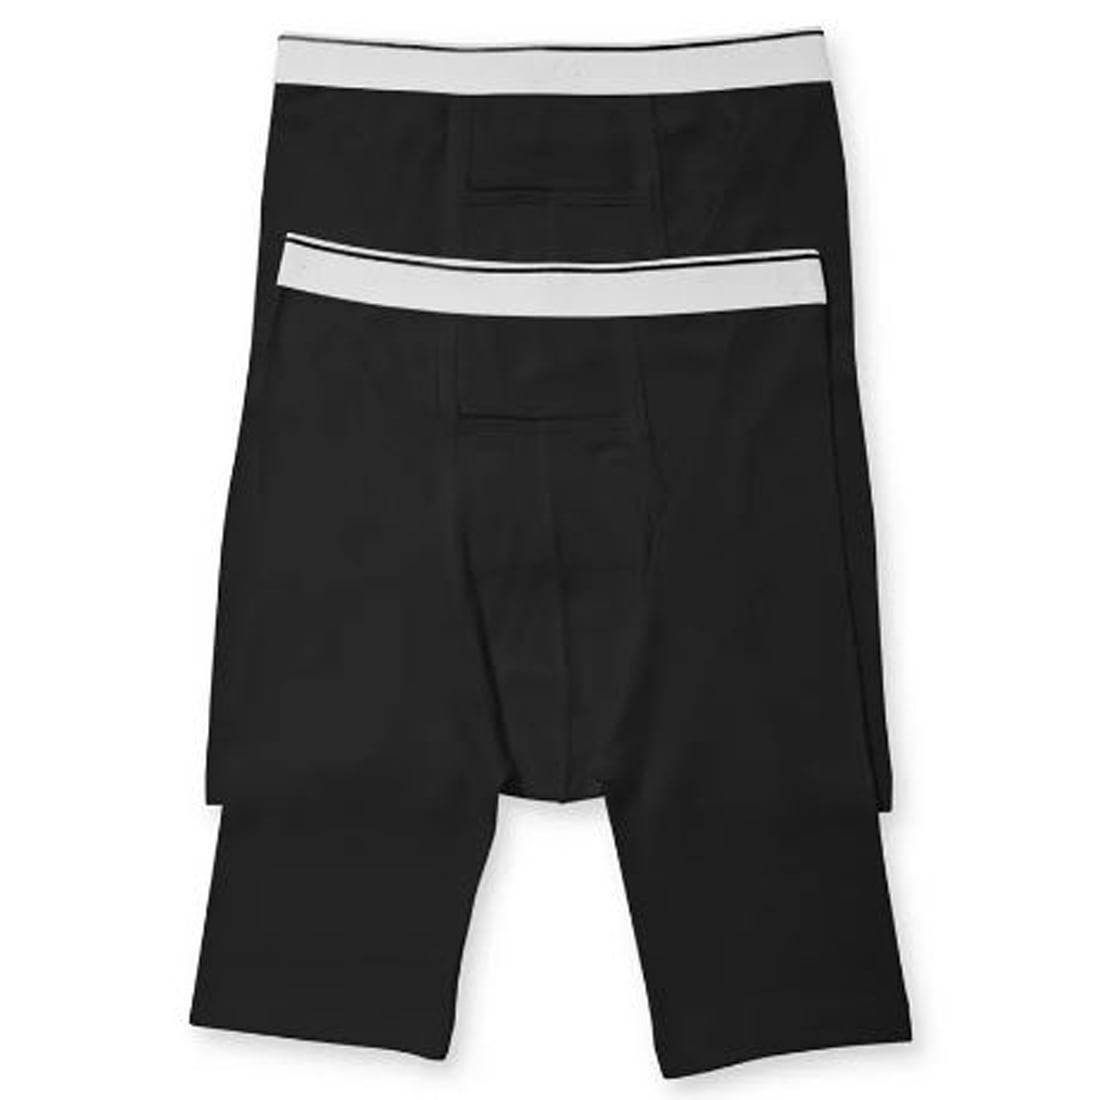 Jockey Men's Underwear Pouch Midway Brief 6 Pack 